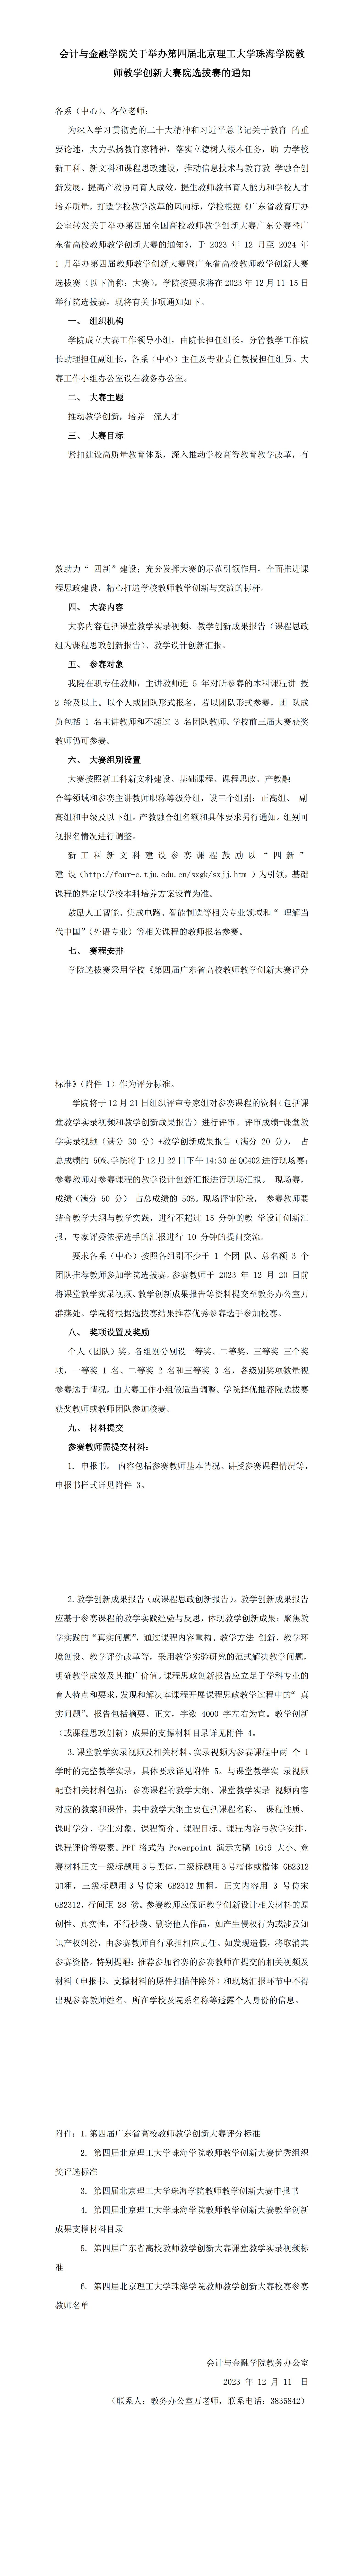 会计与金融学院关于举办第四届北京理工大学珠海学院教师教学创新大赛院选拔赛的通知_00(1).jpg